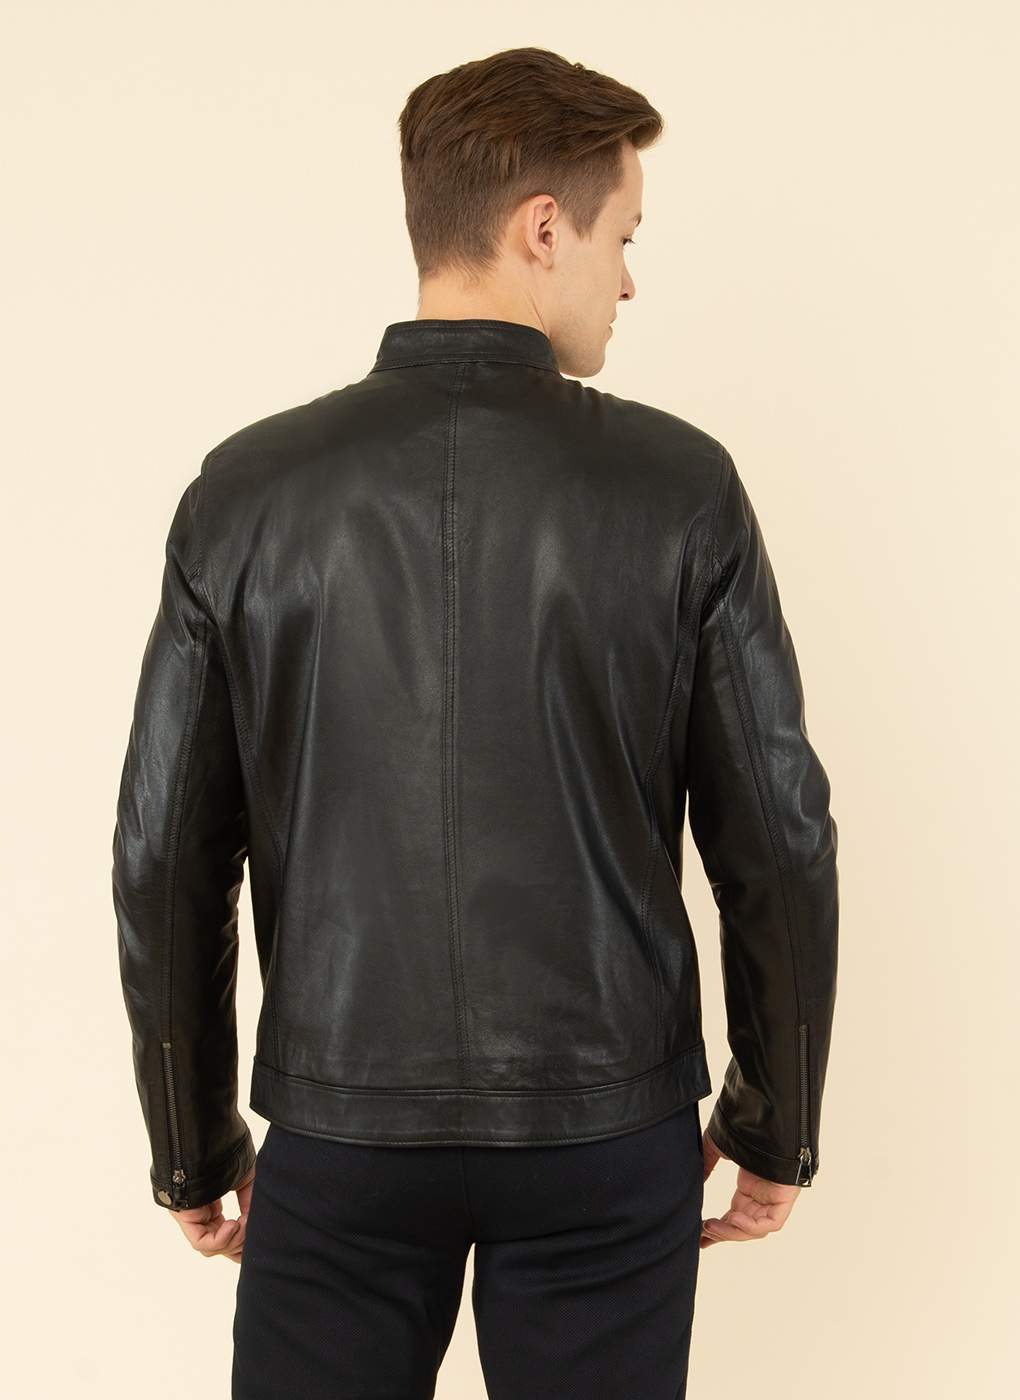 Кожаная куртка мужская Каляев 55055 черная 58 RU